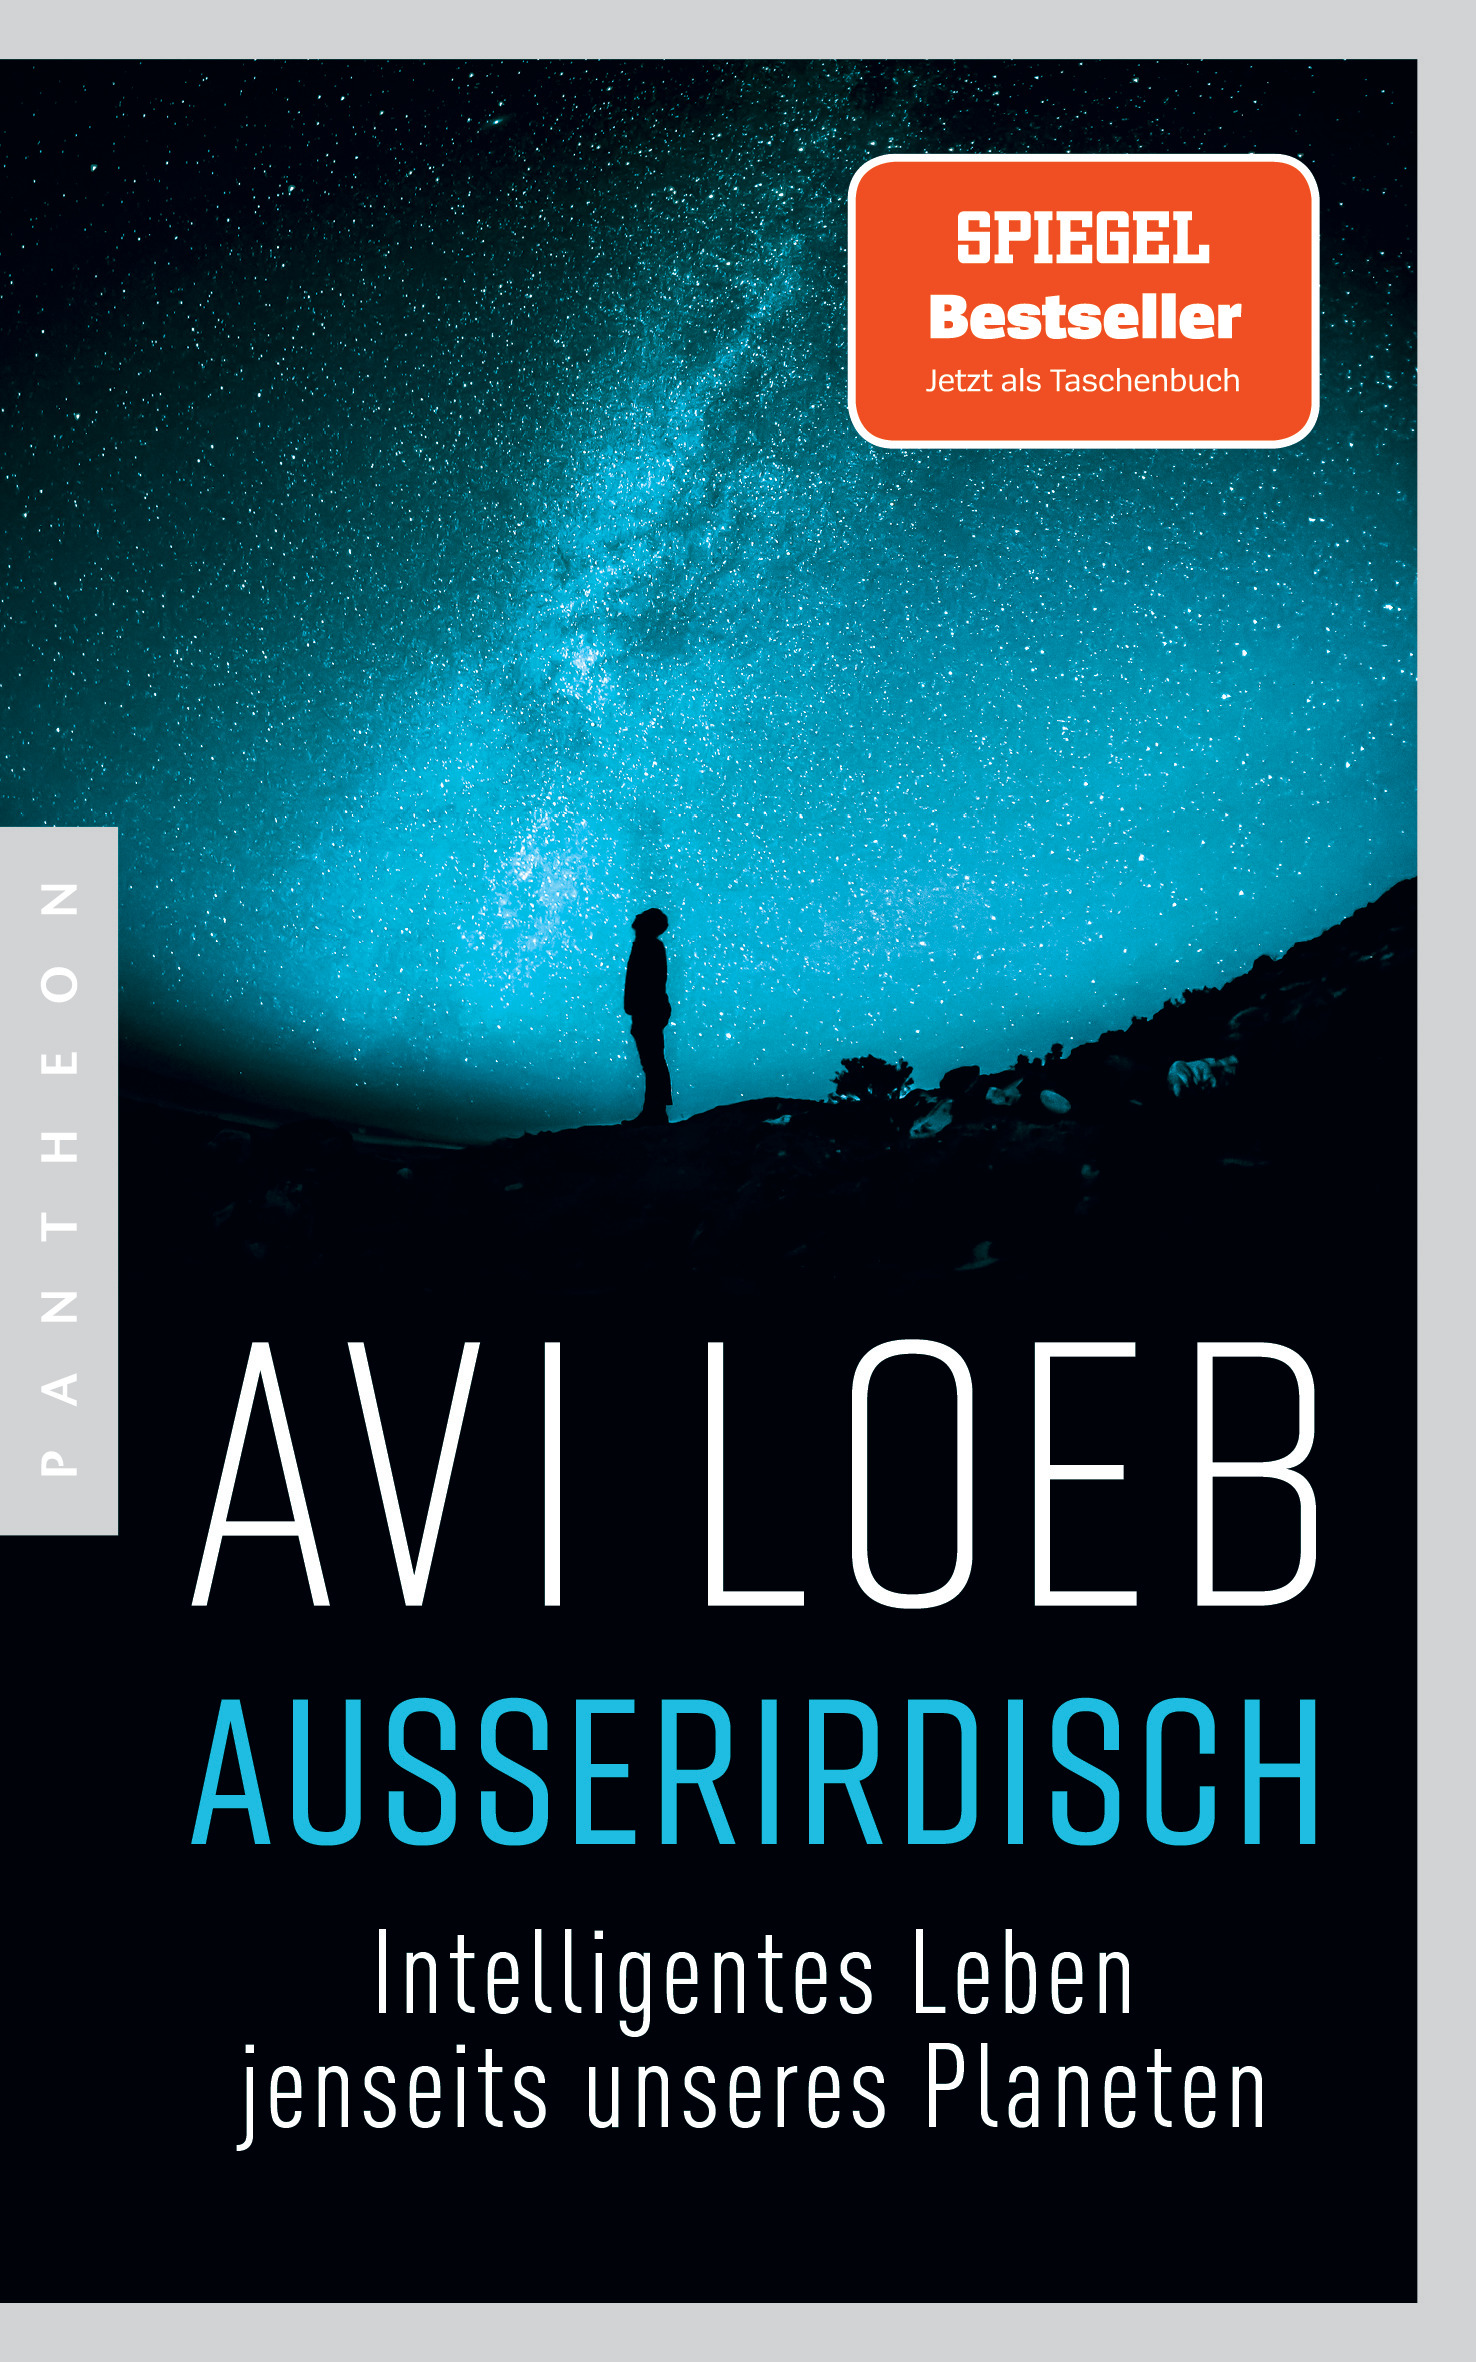 Außerirdisch　Avi　Pantheon　Verlag　Loeb:　Paperback